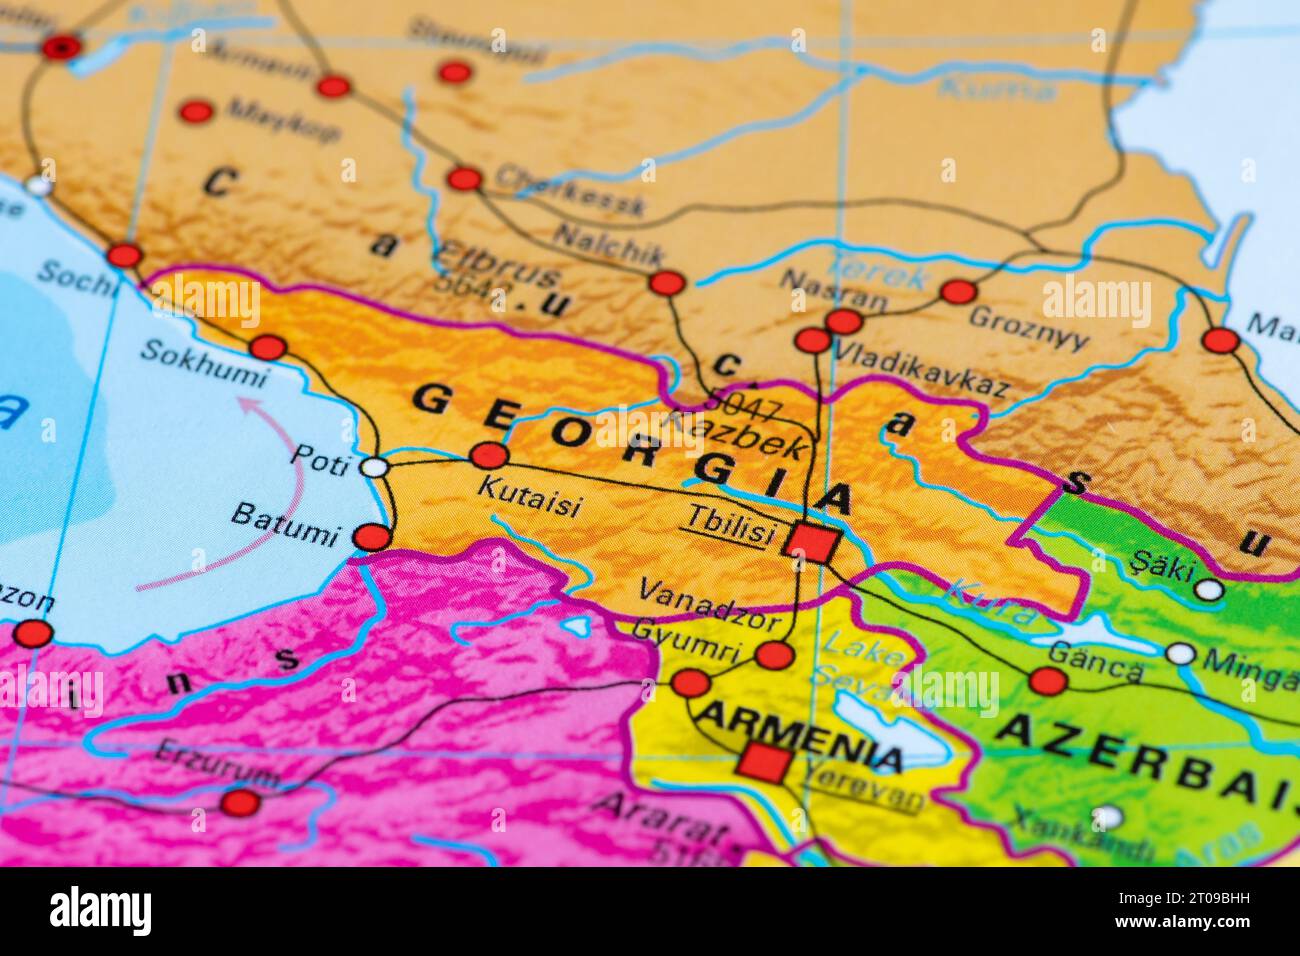 Mappa o cartografia della Georgia con capitale Tbilisi e confini statali con Russia, Turchia, Armenia e Azerbaigian Foto Stock